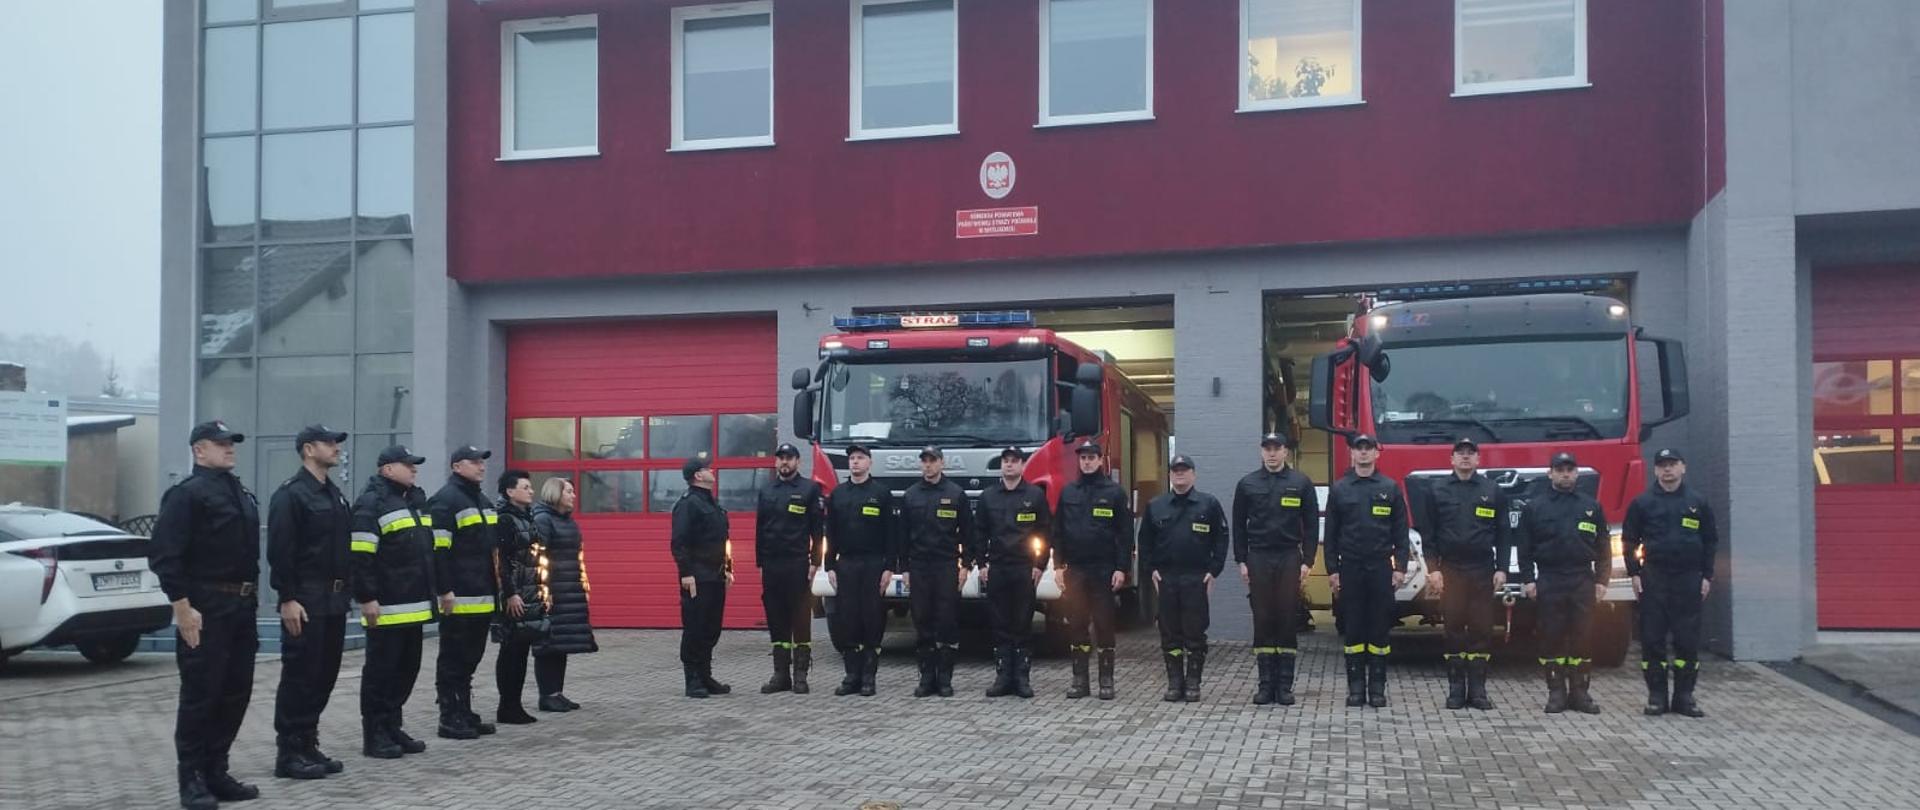 Zdjęcie przedstawia strażaków oddających hołd minutą ciszy za zmarłego strażaka.